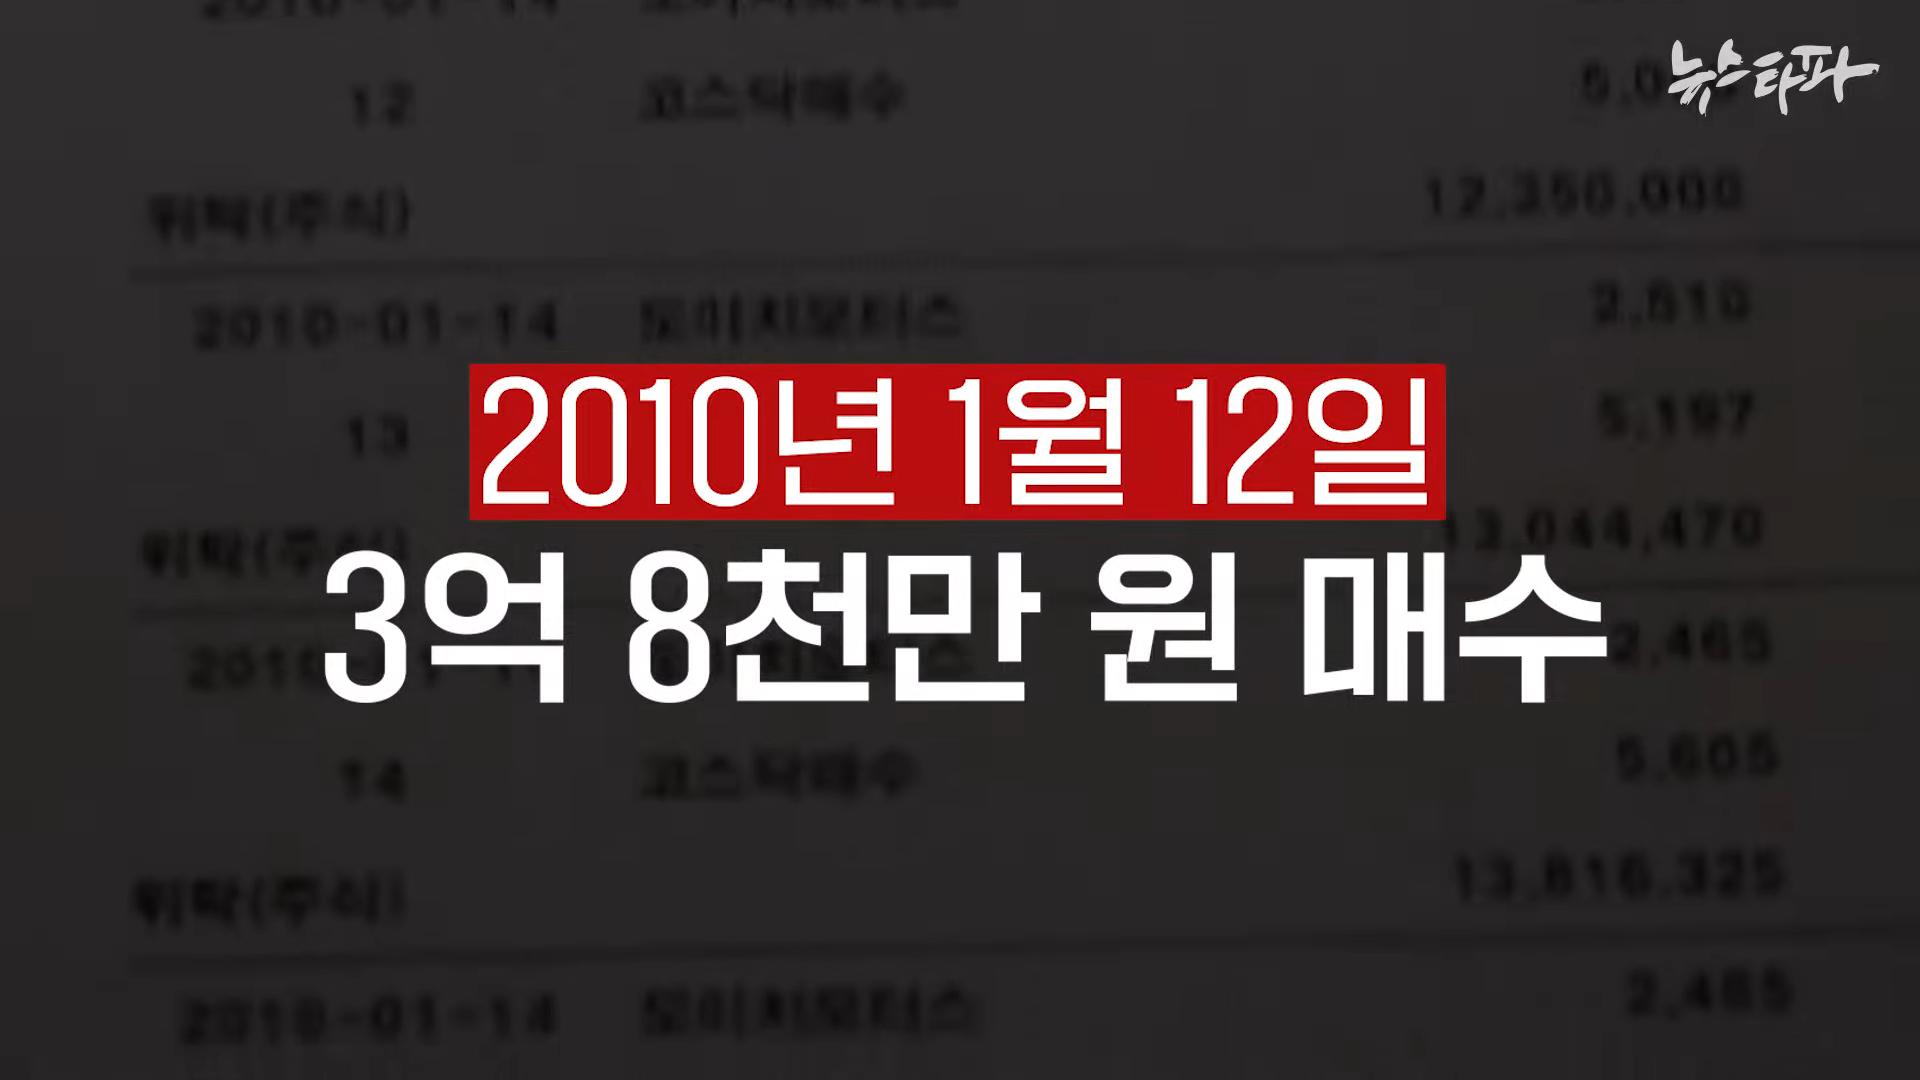 김건희 도이치모터스 녹취록 공개. 대통령 거짓말 드러났다 - 뉴스타파 2-28 screenshot.png.jpg